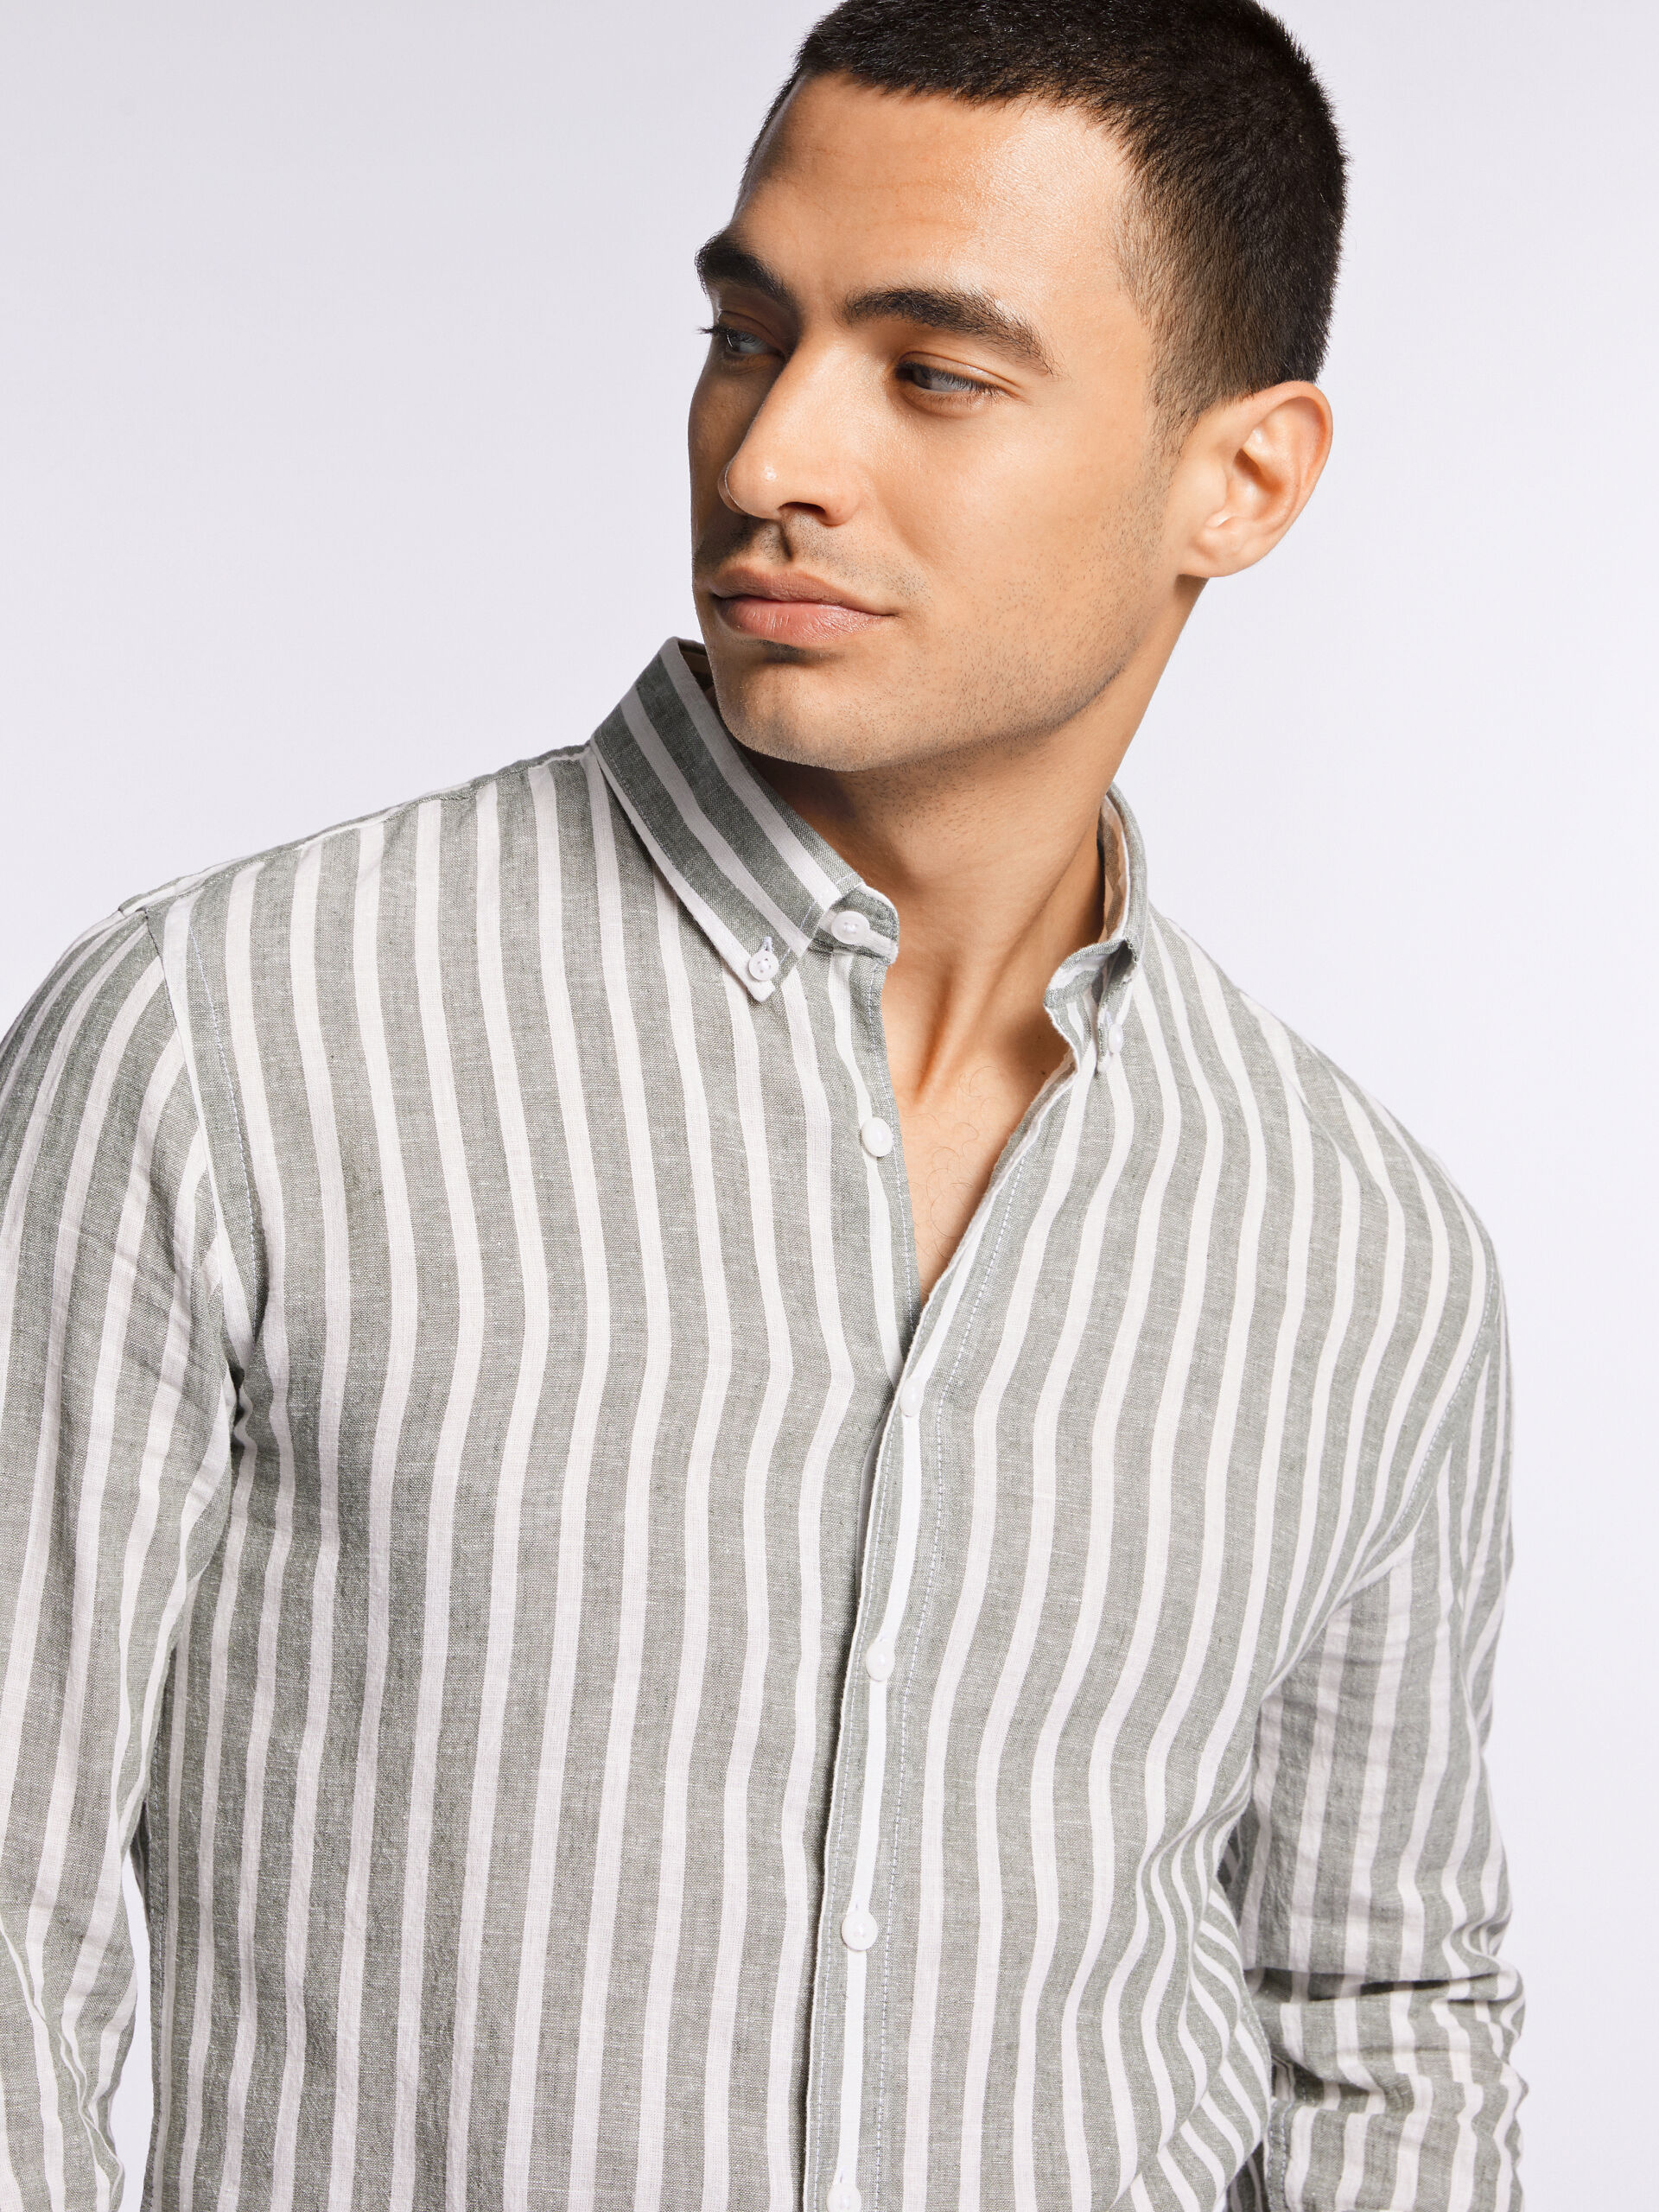 Model wearing a striped Lindbergh linen shirt